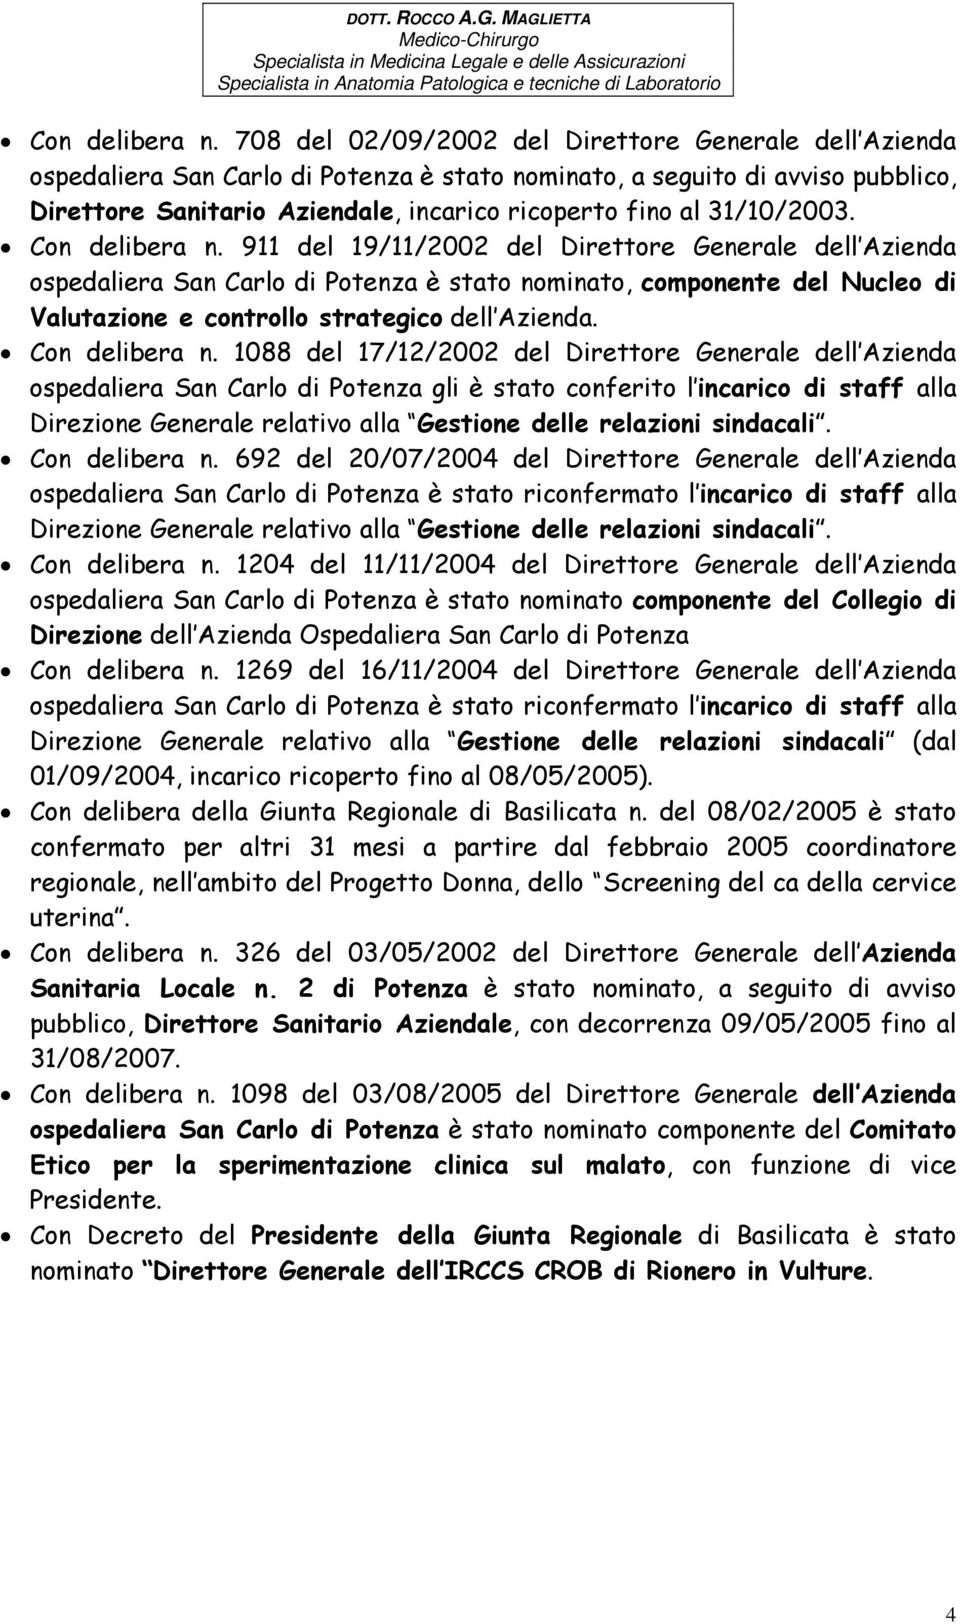 31/10/2003.  911 del 19/11/2002 del Direttore Generale dell Azienda ospedaliera San Carlo di Potenza è stato nominato, componente del Nucleo di Valutazione e controllo strategico dell Azienda.